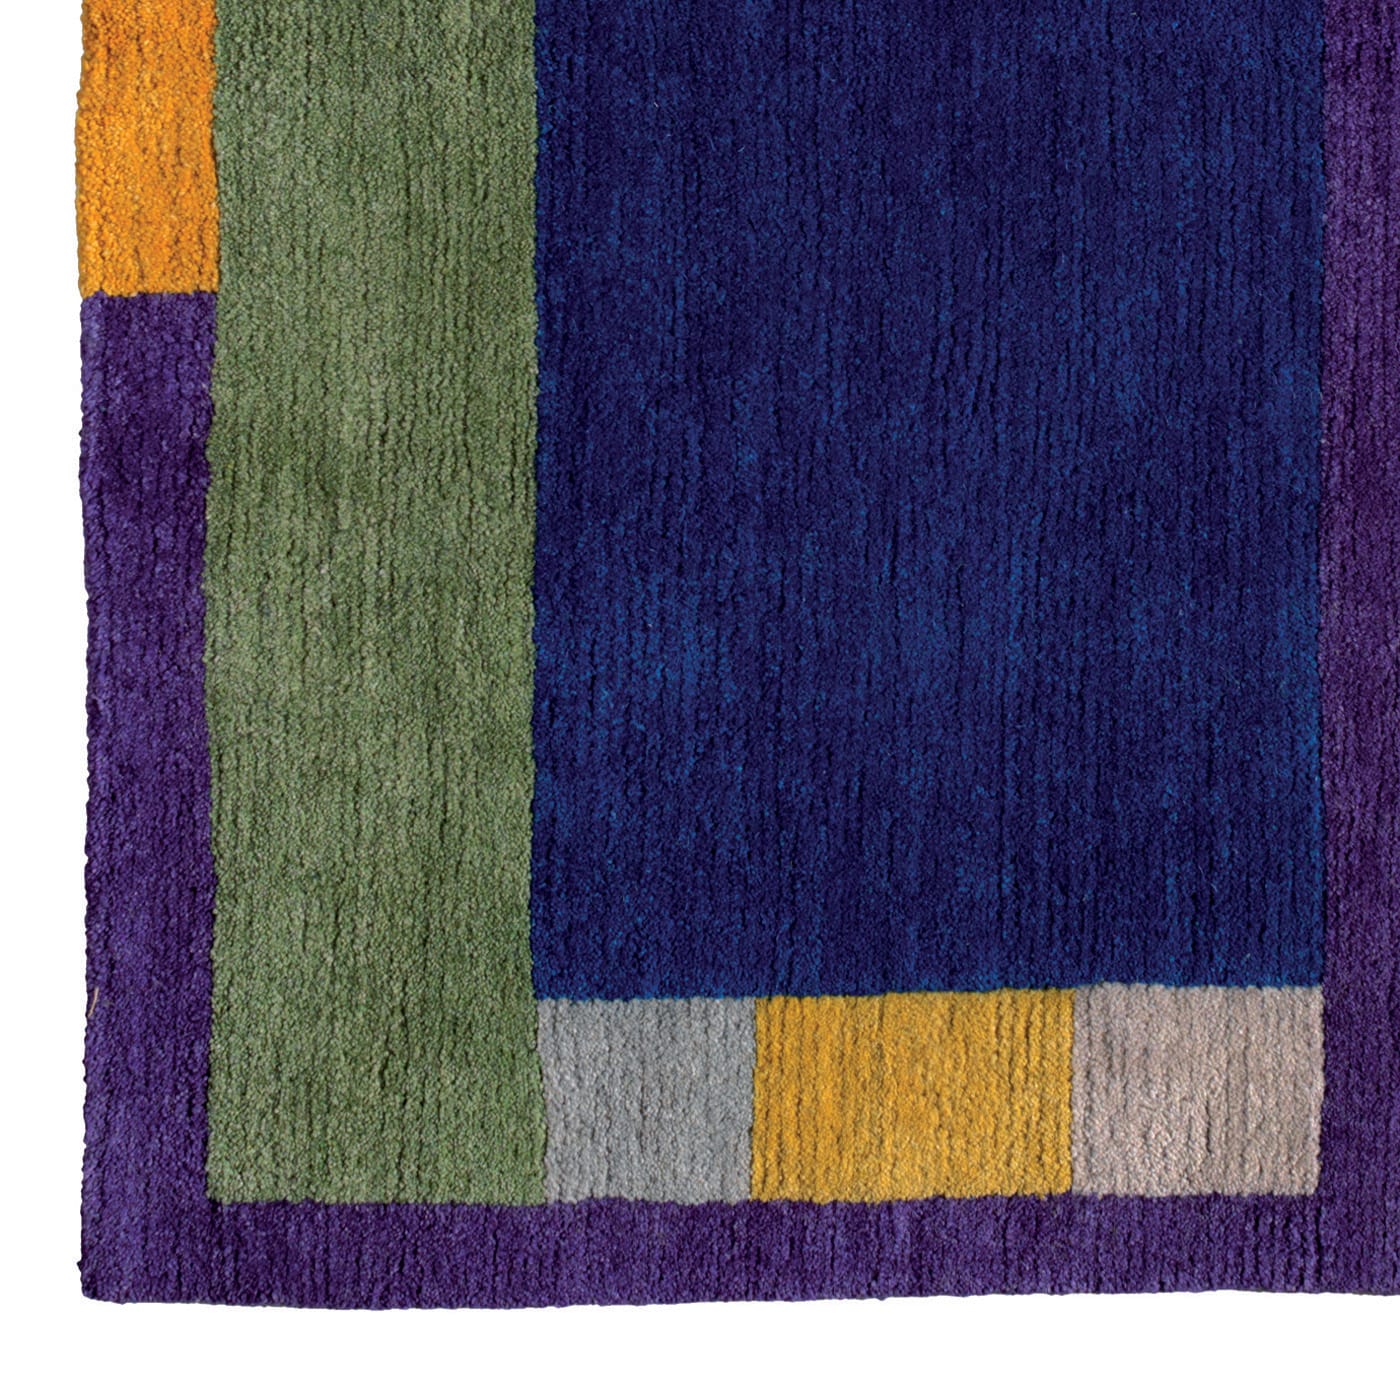 CEM7 Carpet by Chung Eun Mo - Post Design - Memphis